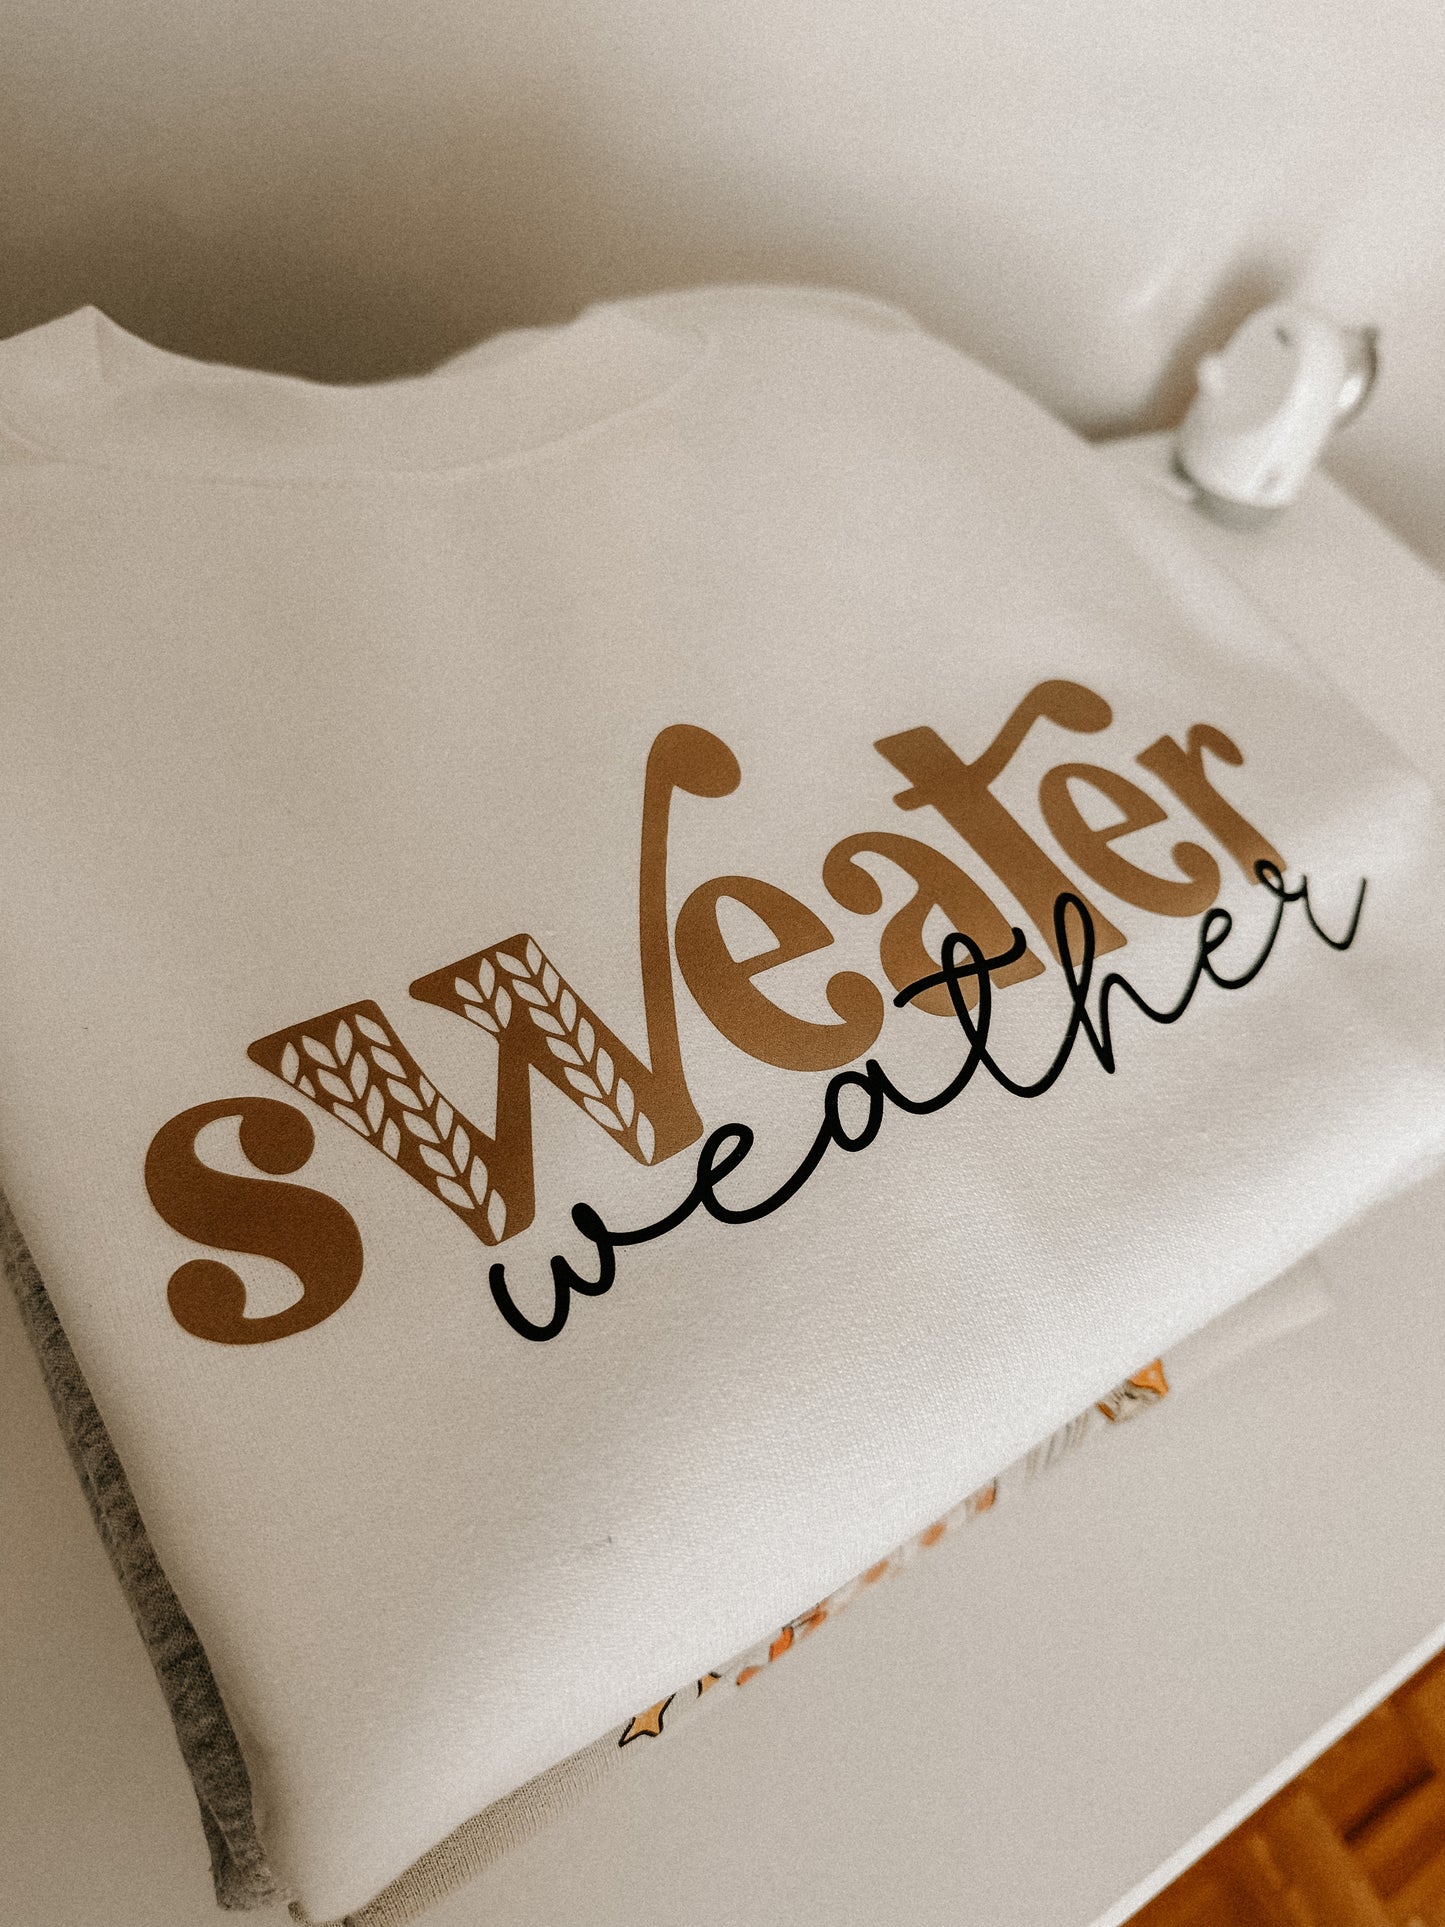 Sweater Weather 2 - Crew Neck